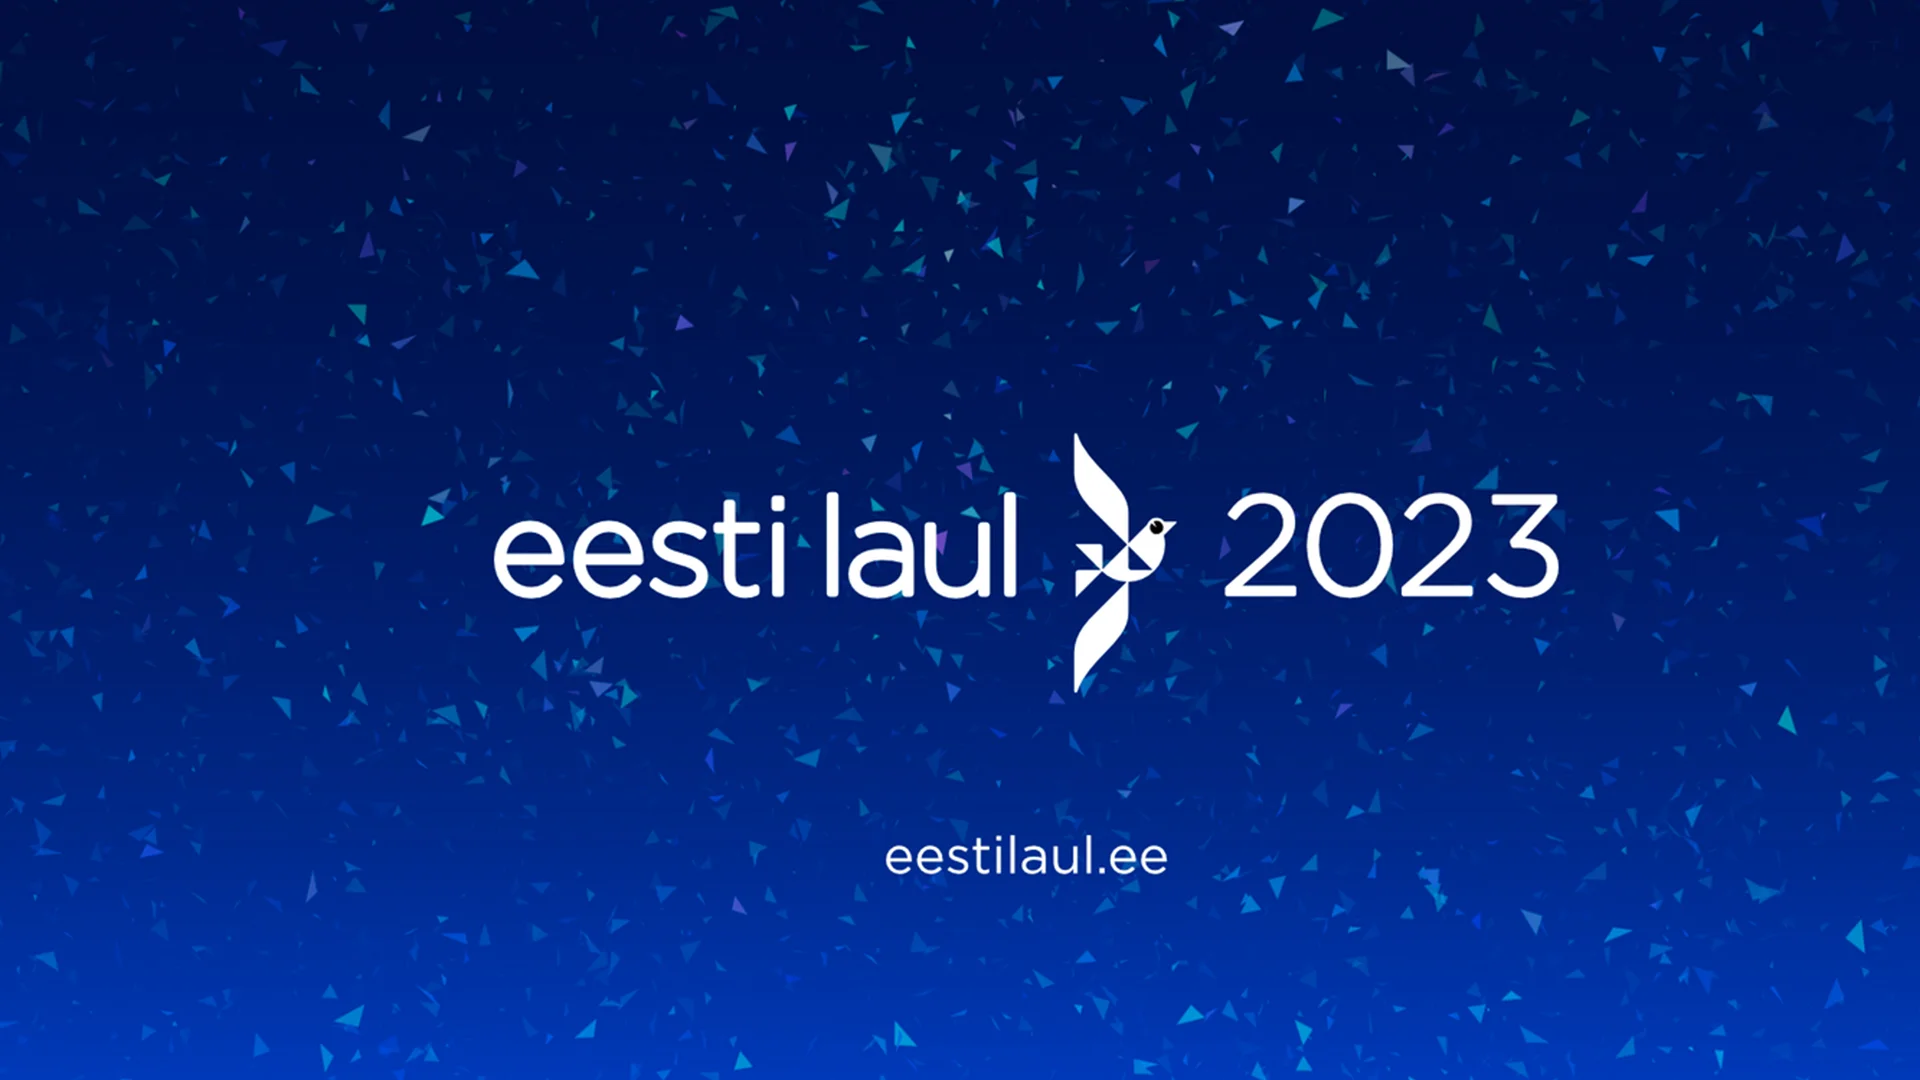 eesti laul 2023 estonie